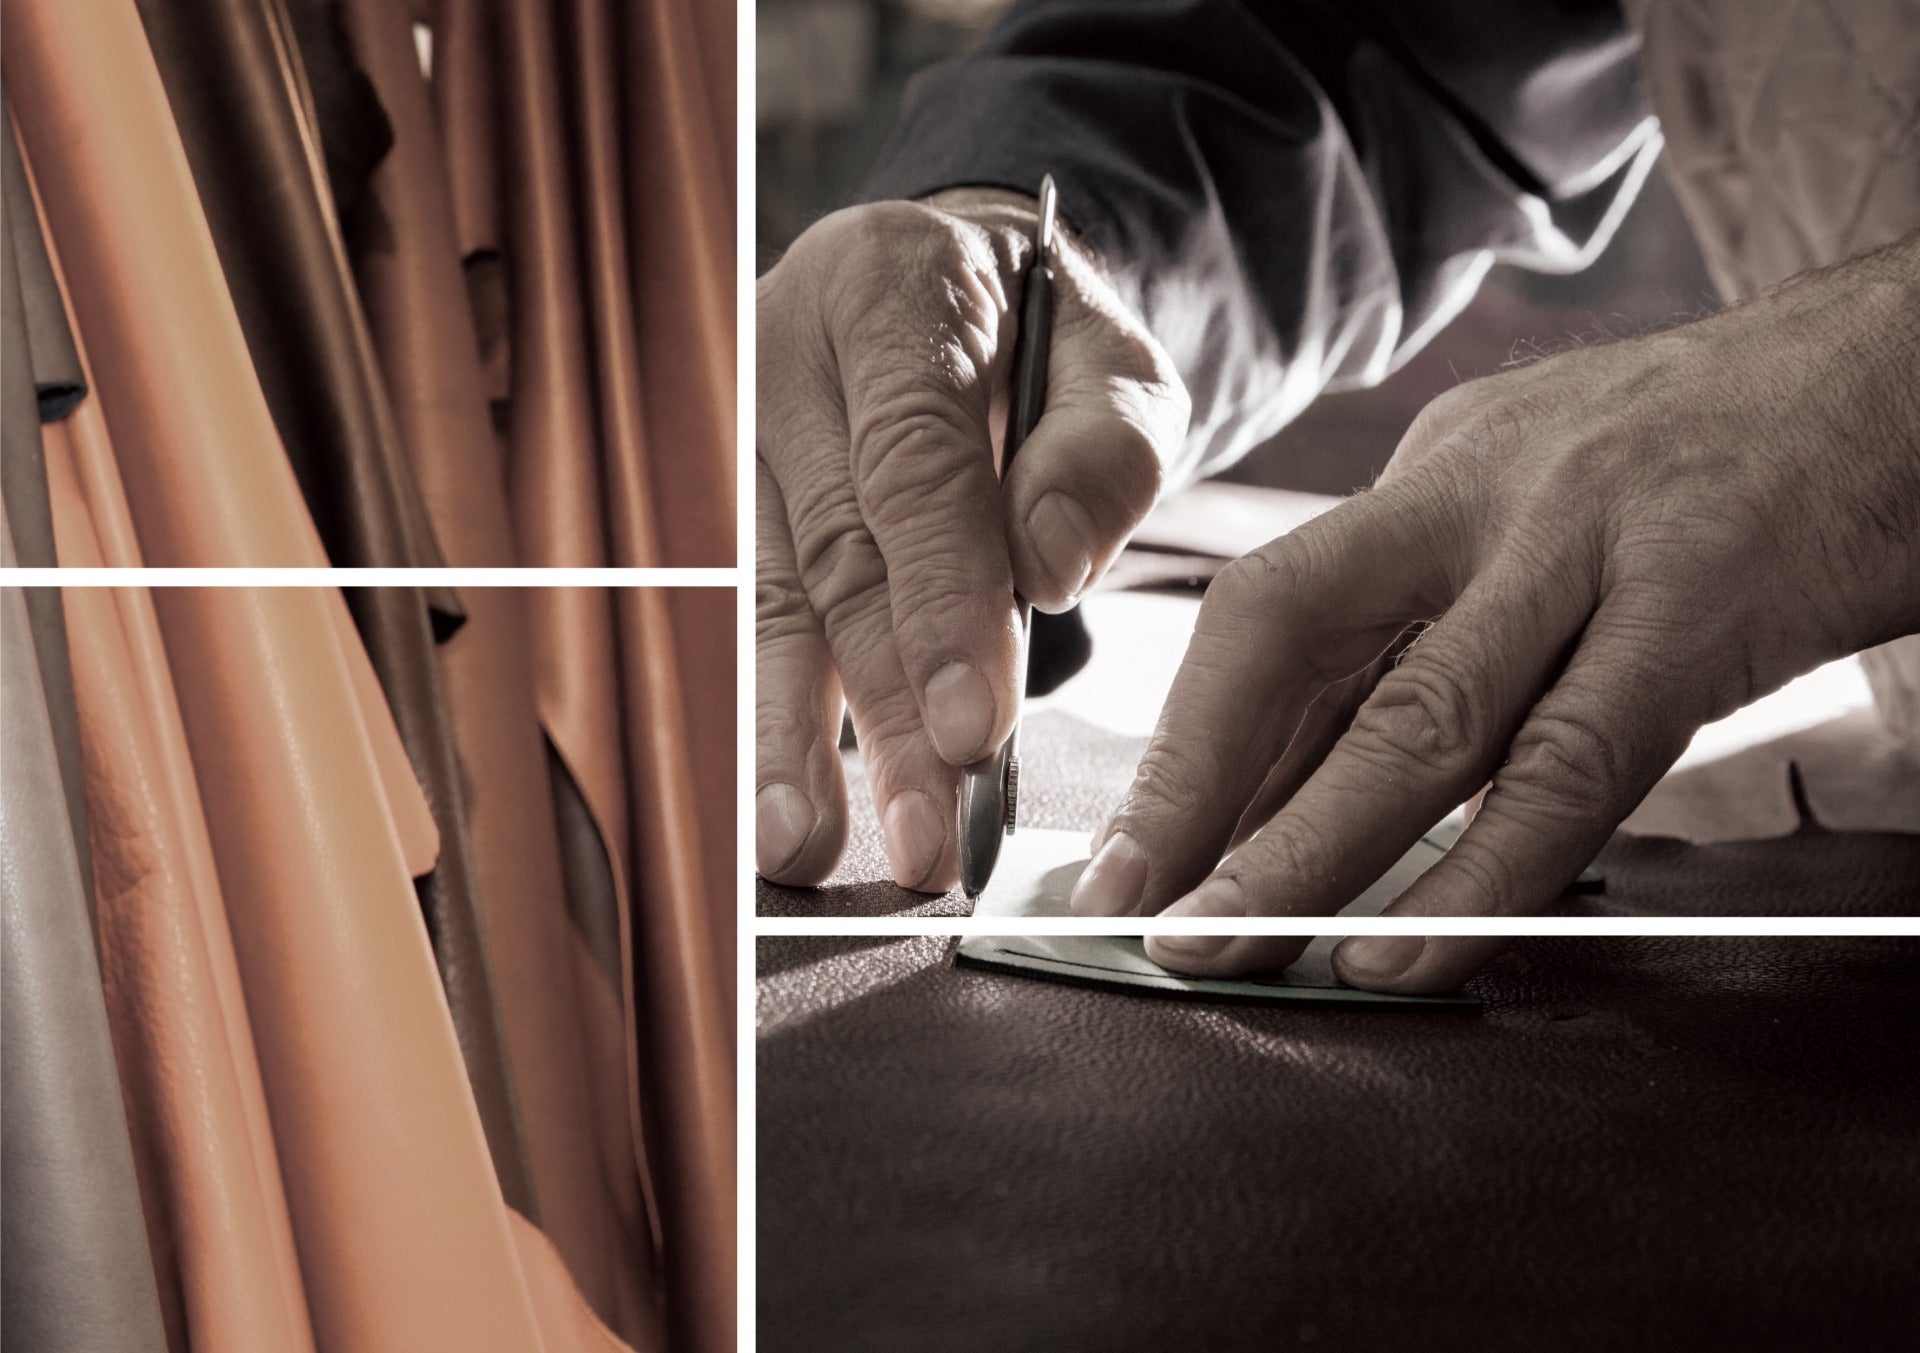 A mesterember egy hagyományos bőrműhelyben gondosan megmunkál egy teljes bőrdarabot.